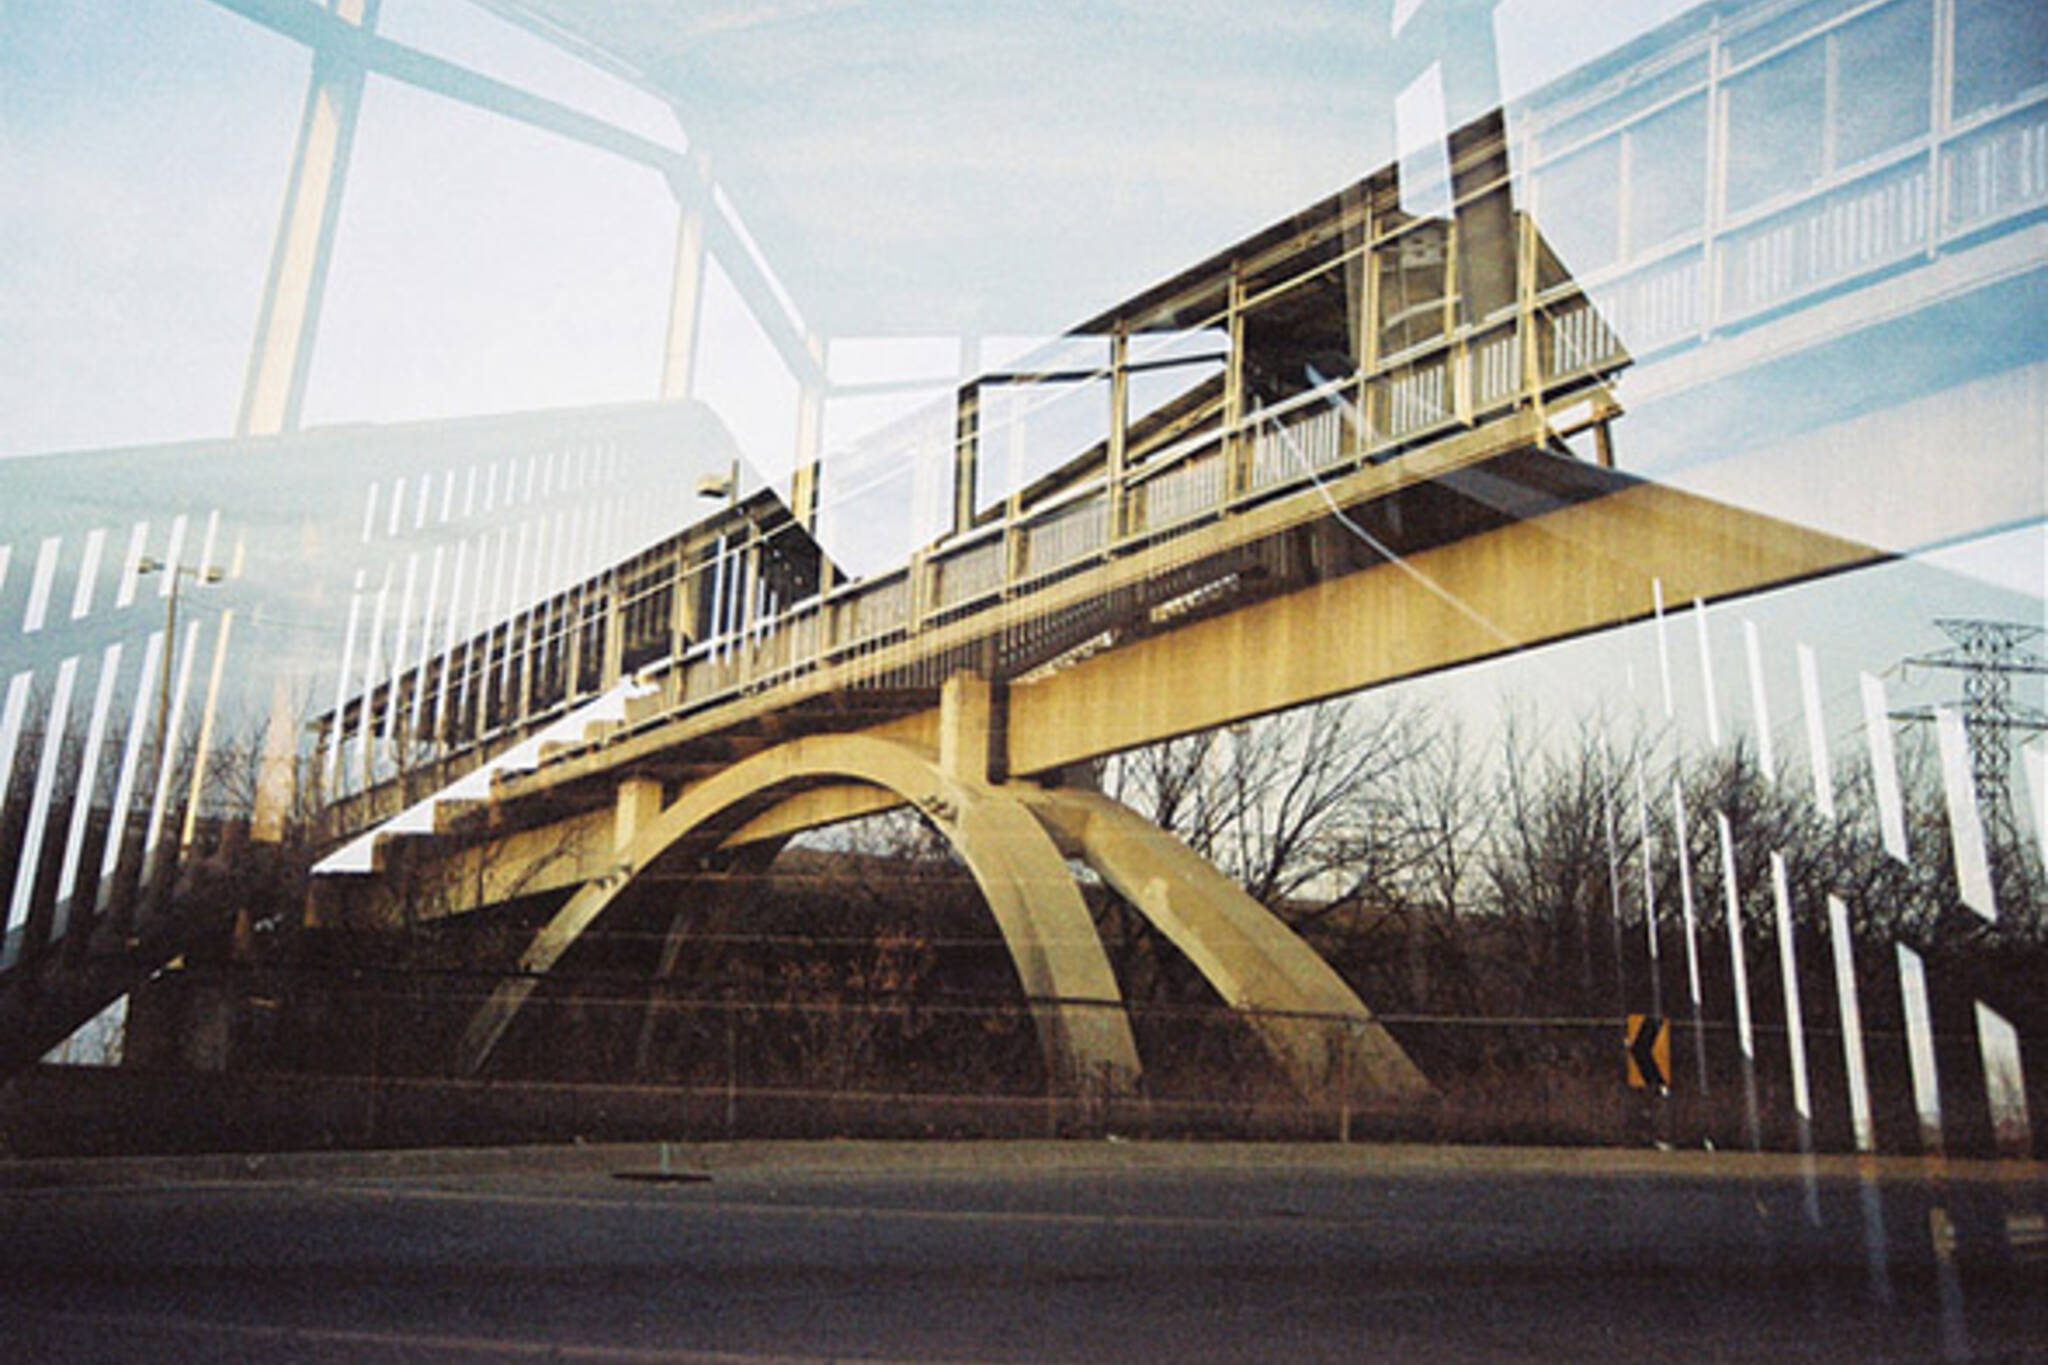 warden station bridge